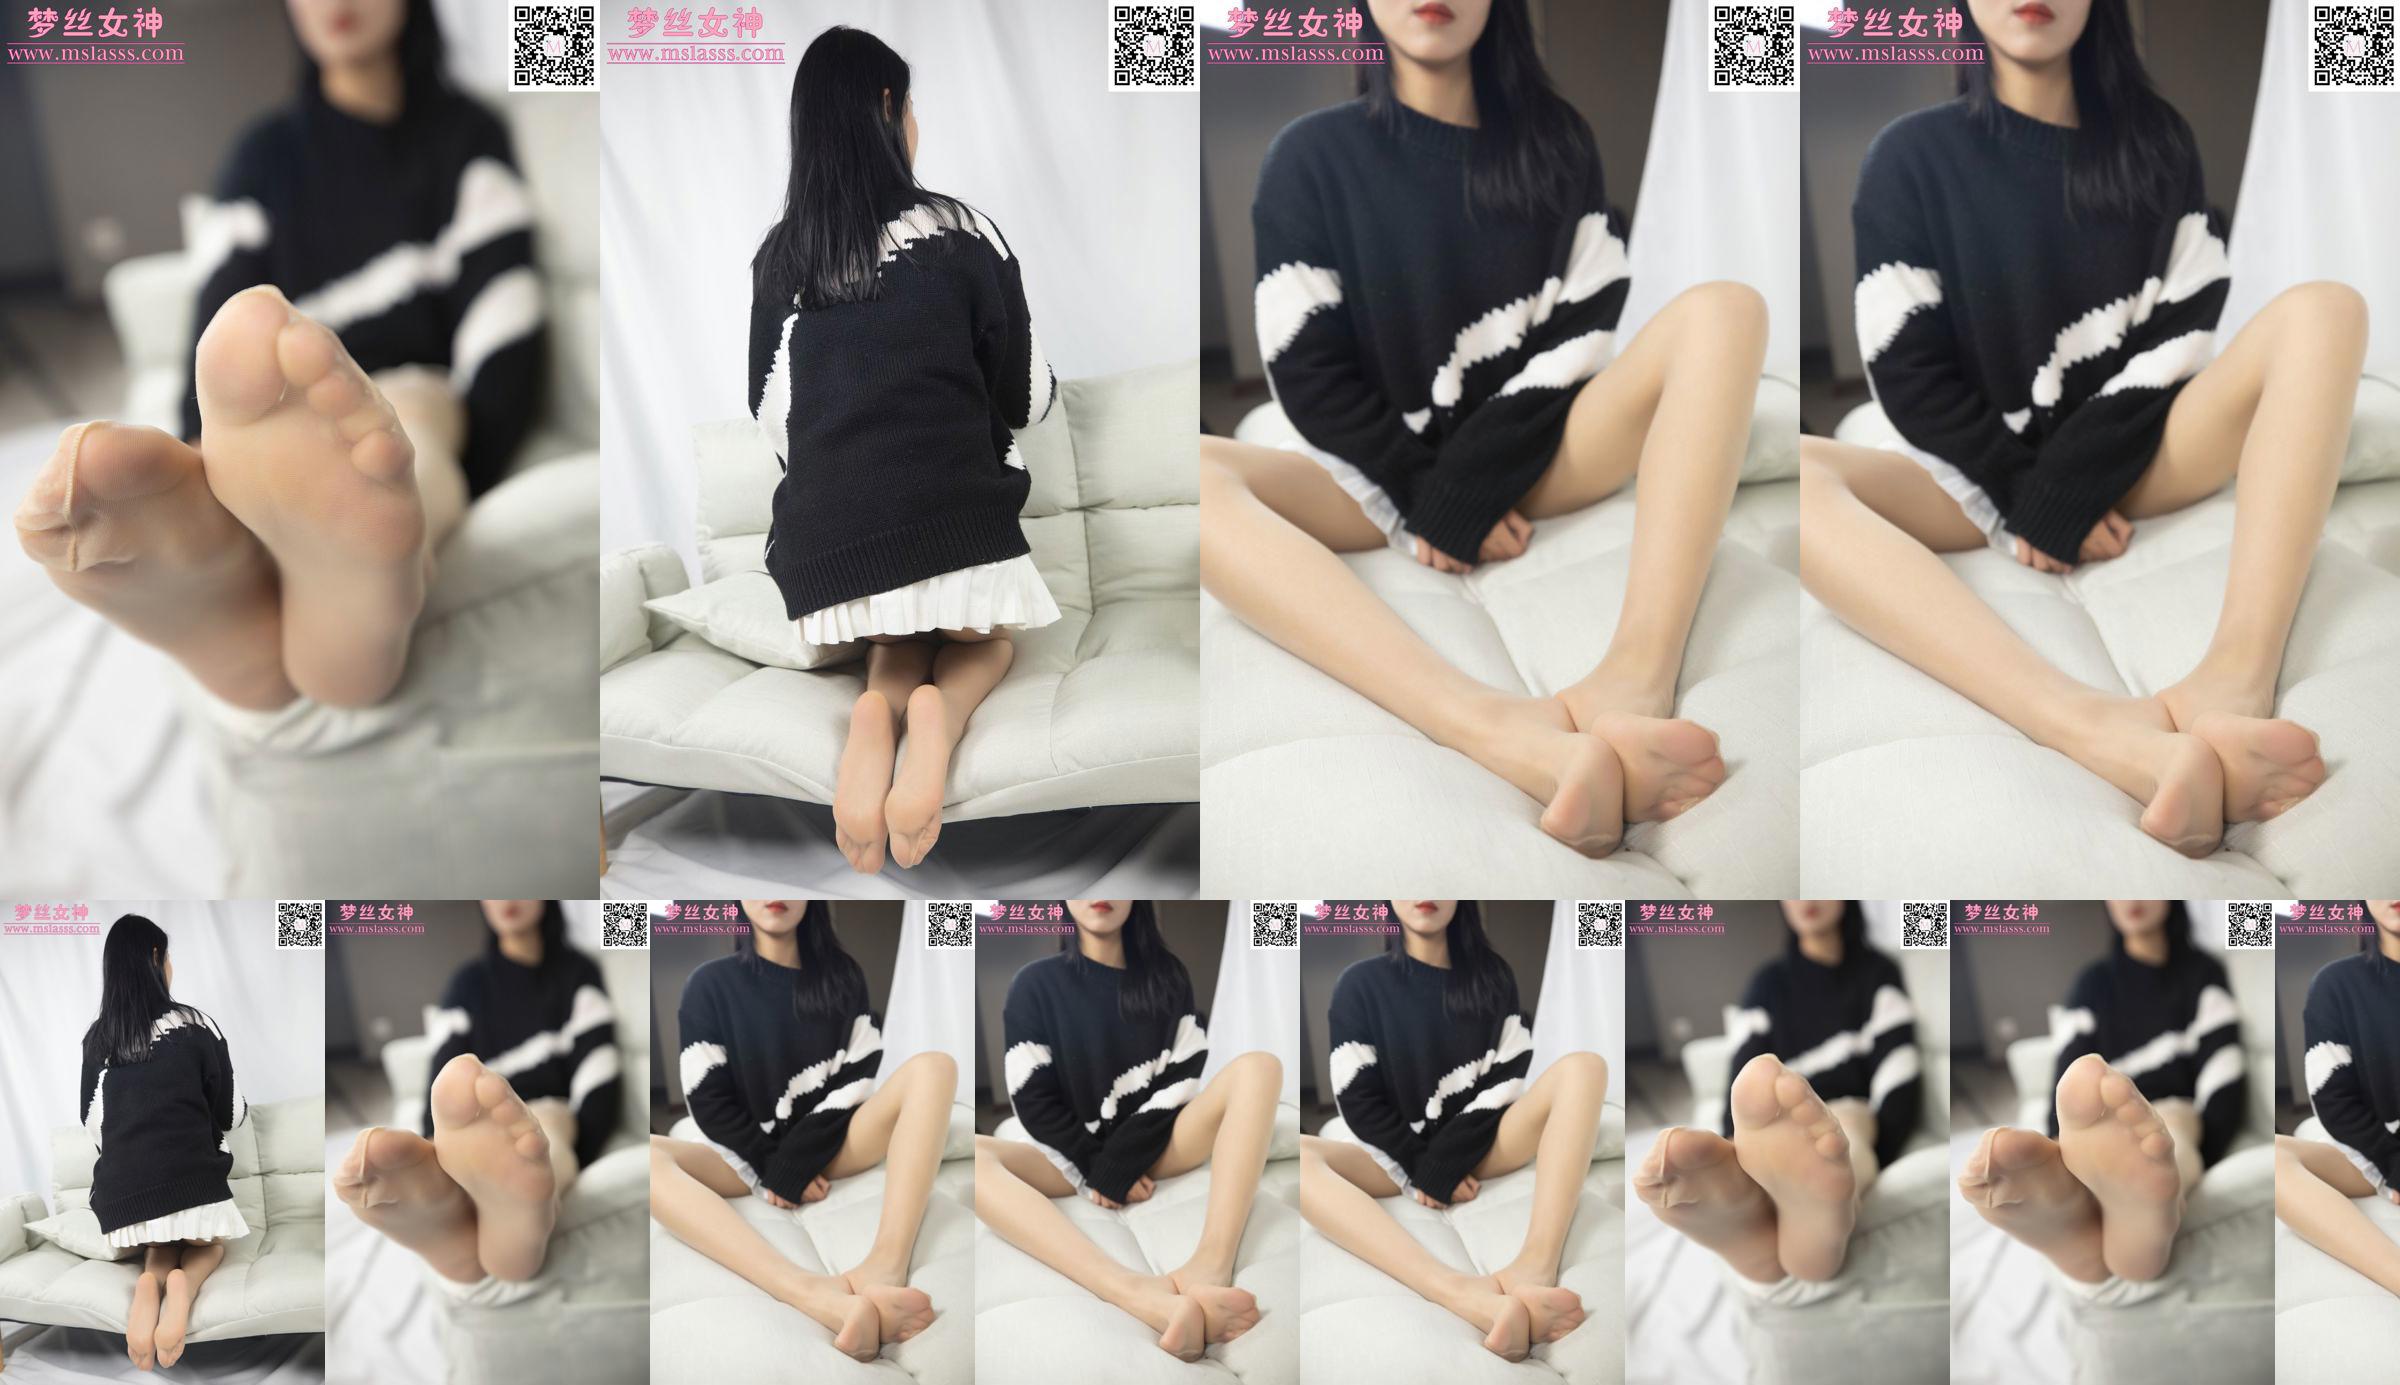 [꿈의 여신 MSLASS] Xiaomu의 스웨터는 그녀의 긴 다리를 막을 수 없습니다 No.6e2e16 페이지 34